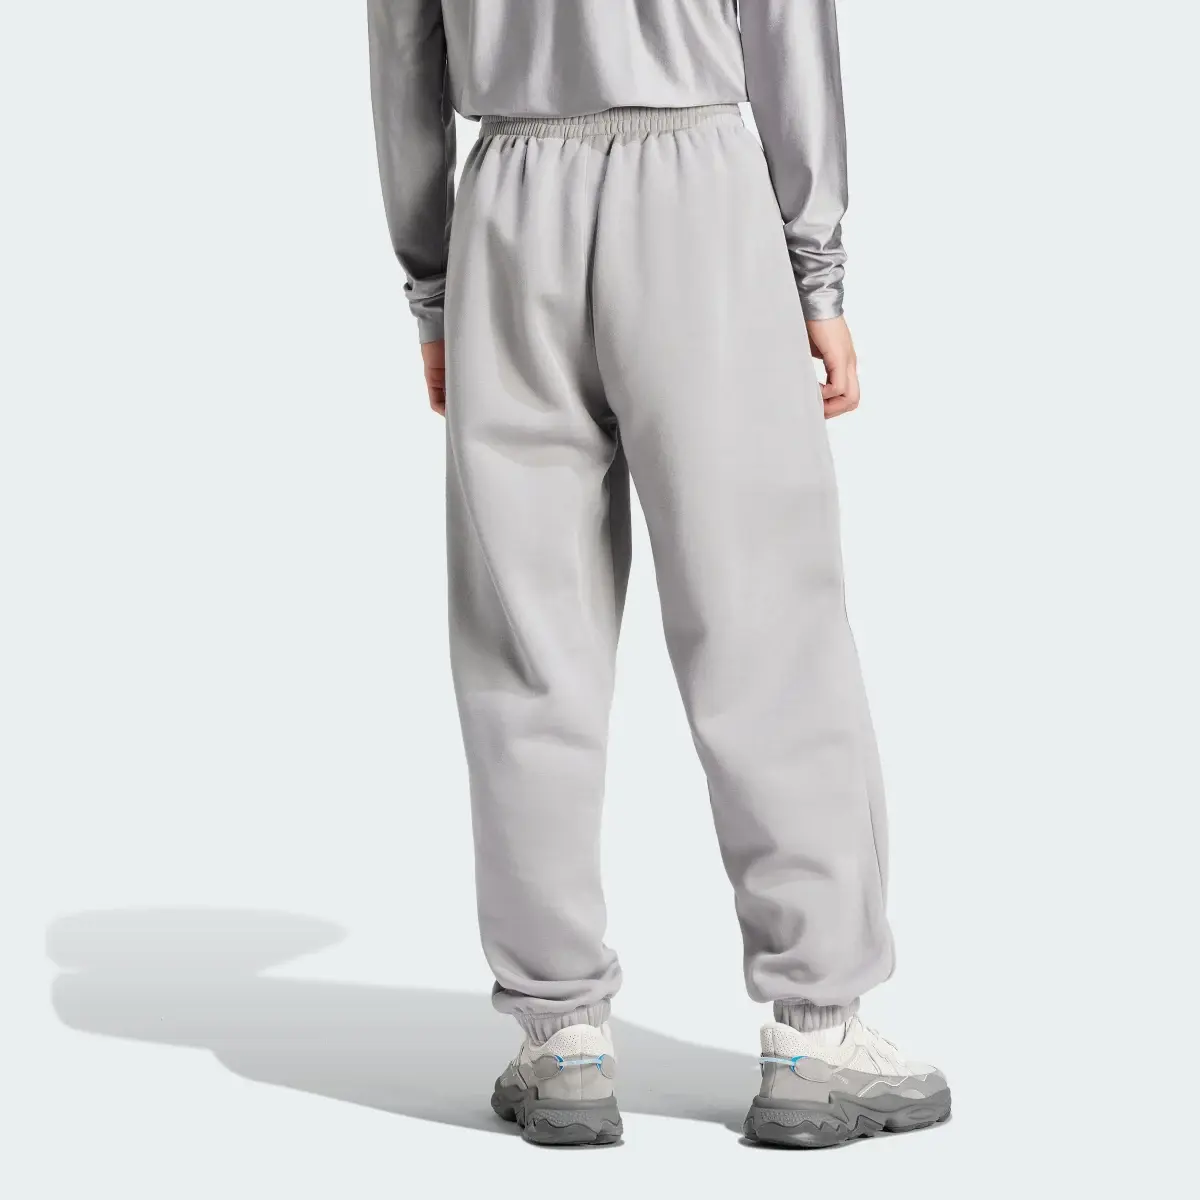 Adidas Sweat pants Fashion. 2